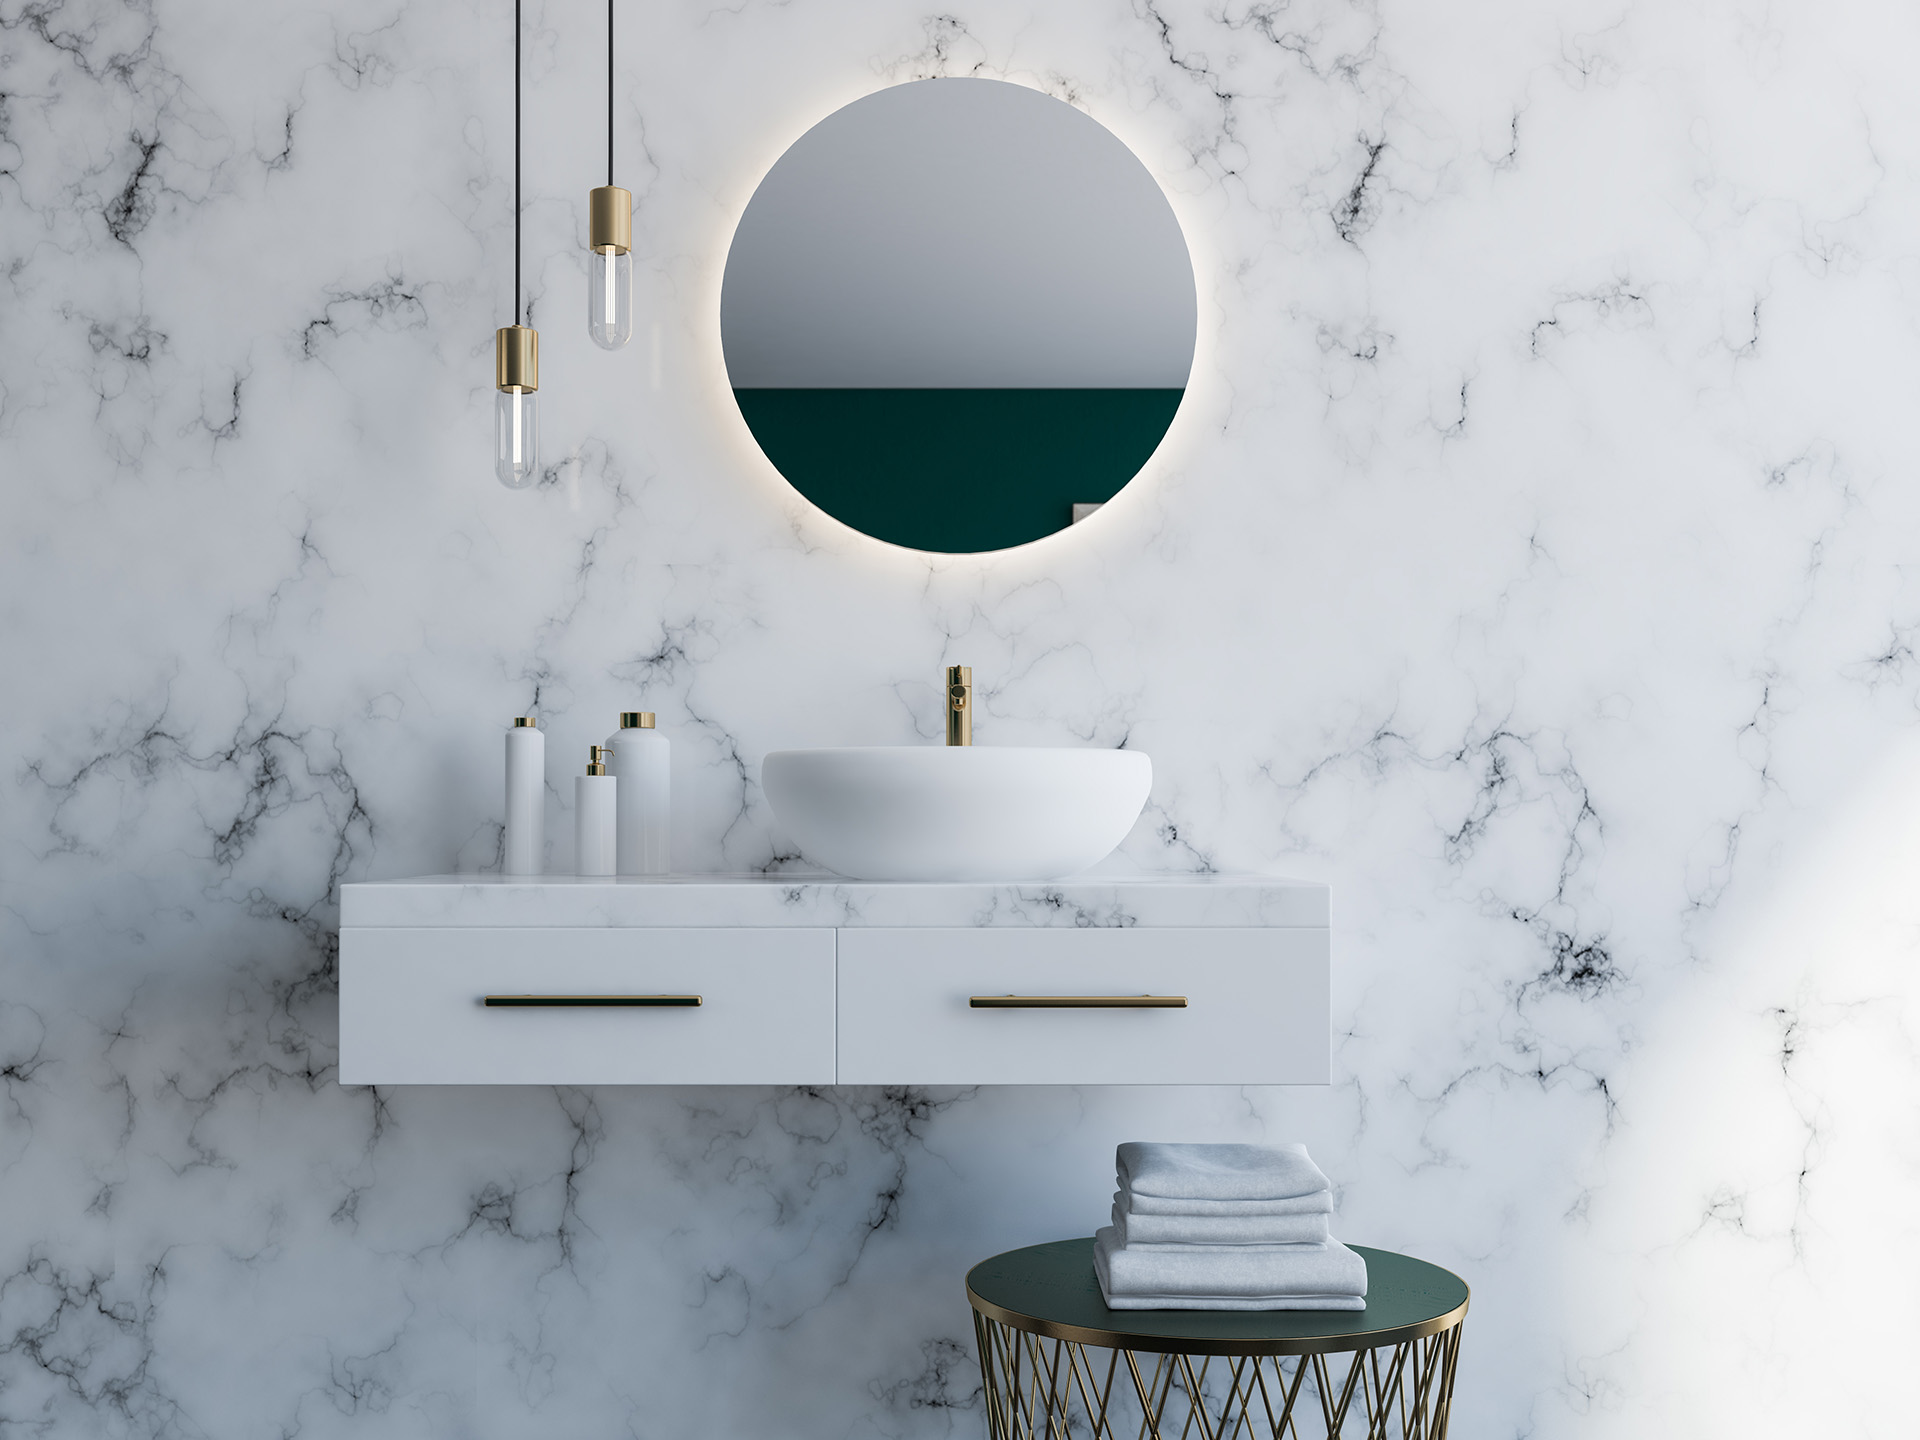 浴室的镜子上的想法:正确的设计正确的效果